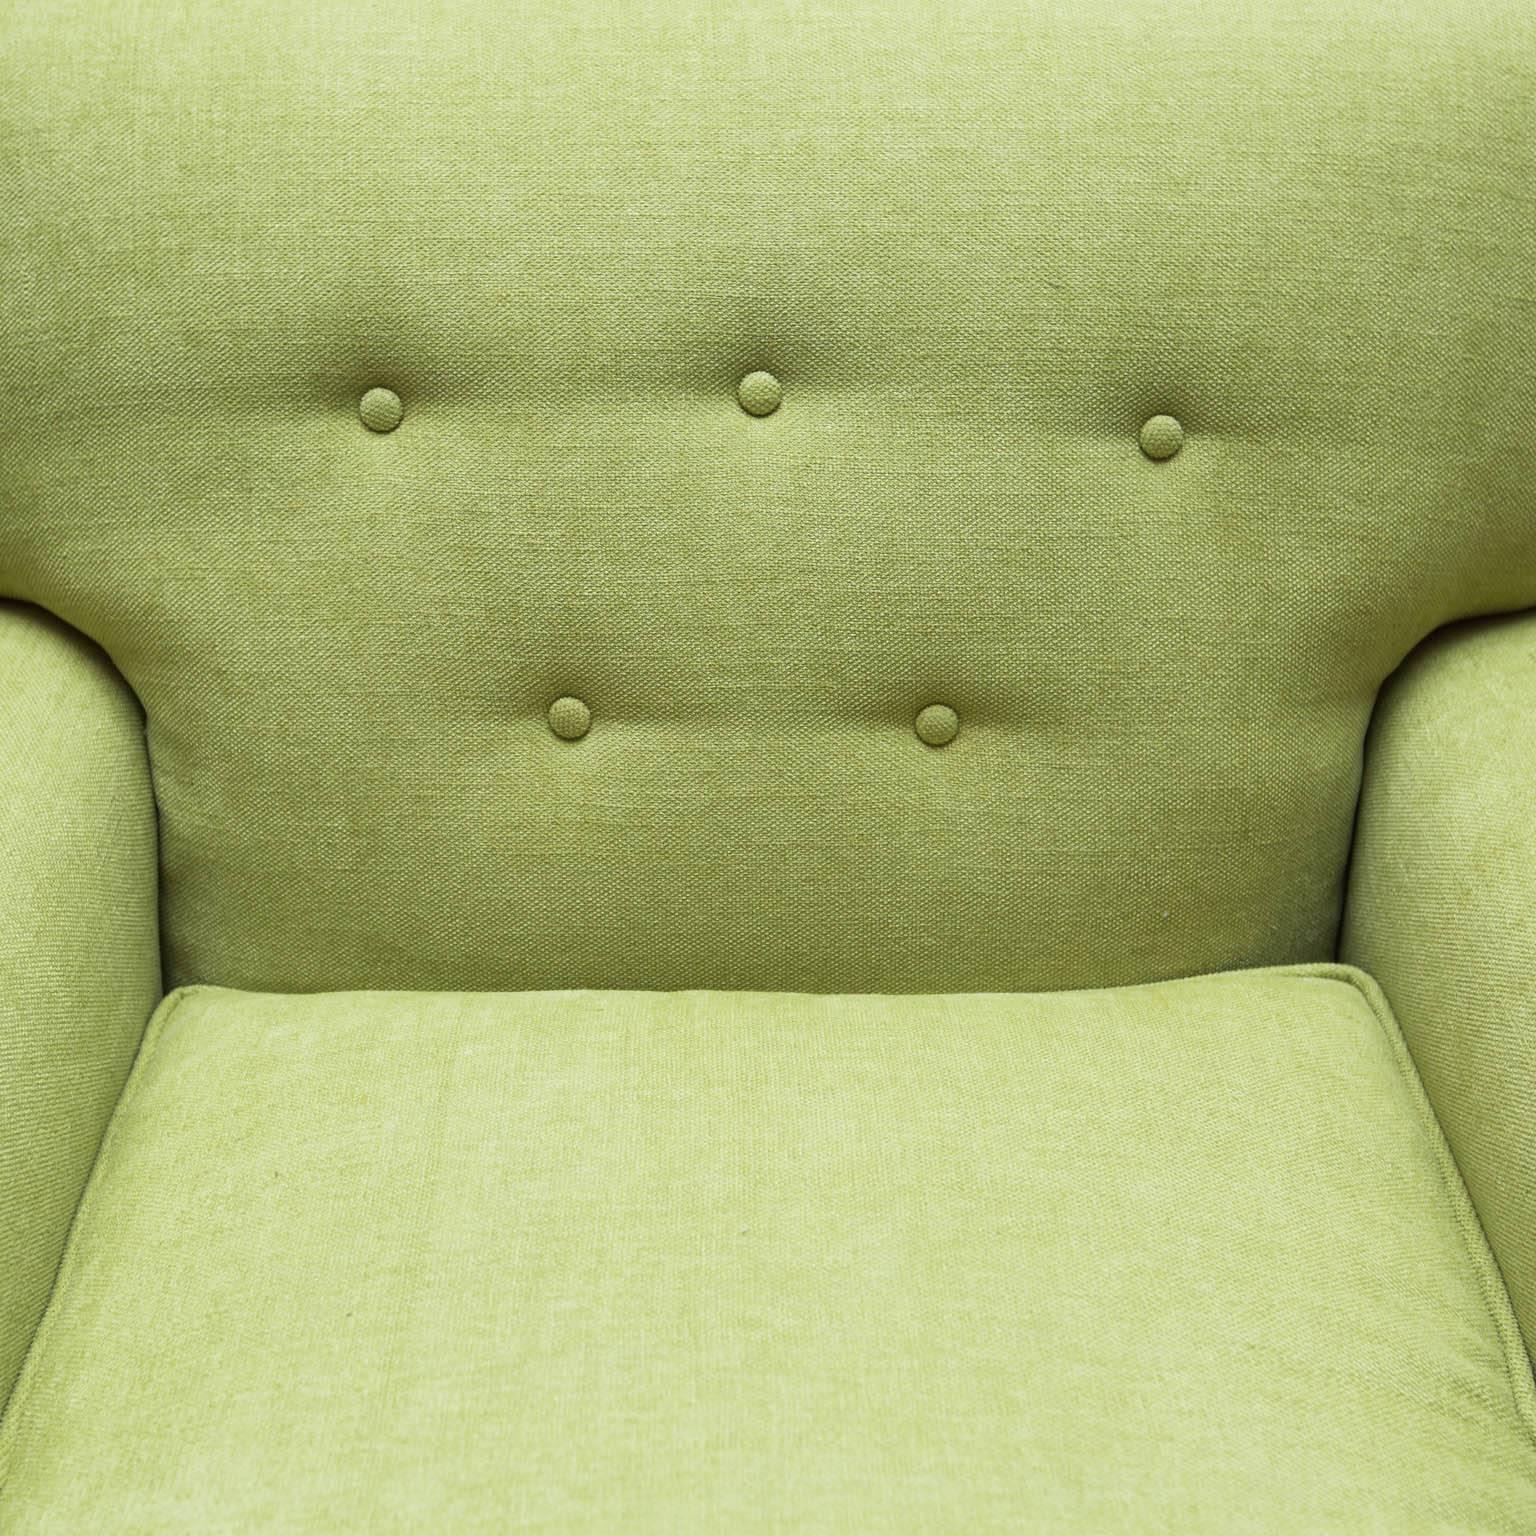 American Kroehler Mid-Century Modern Lounge Chair